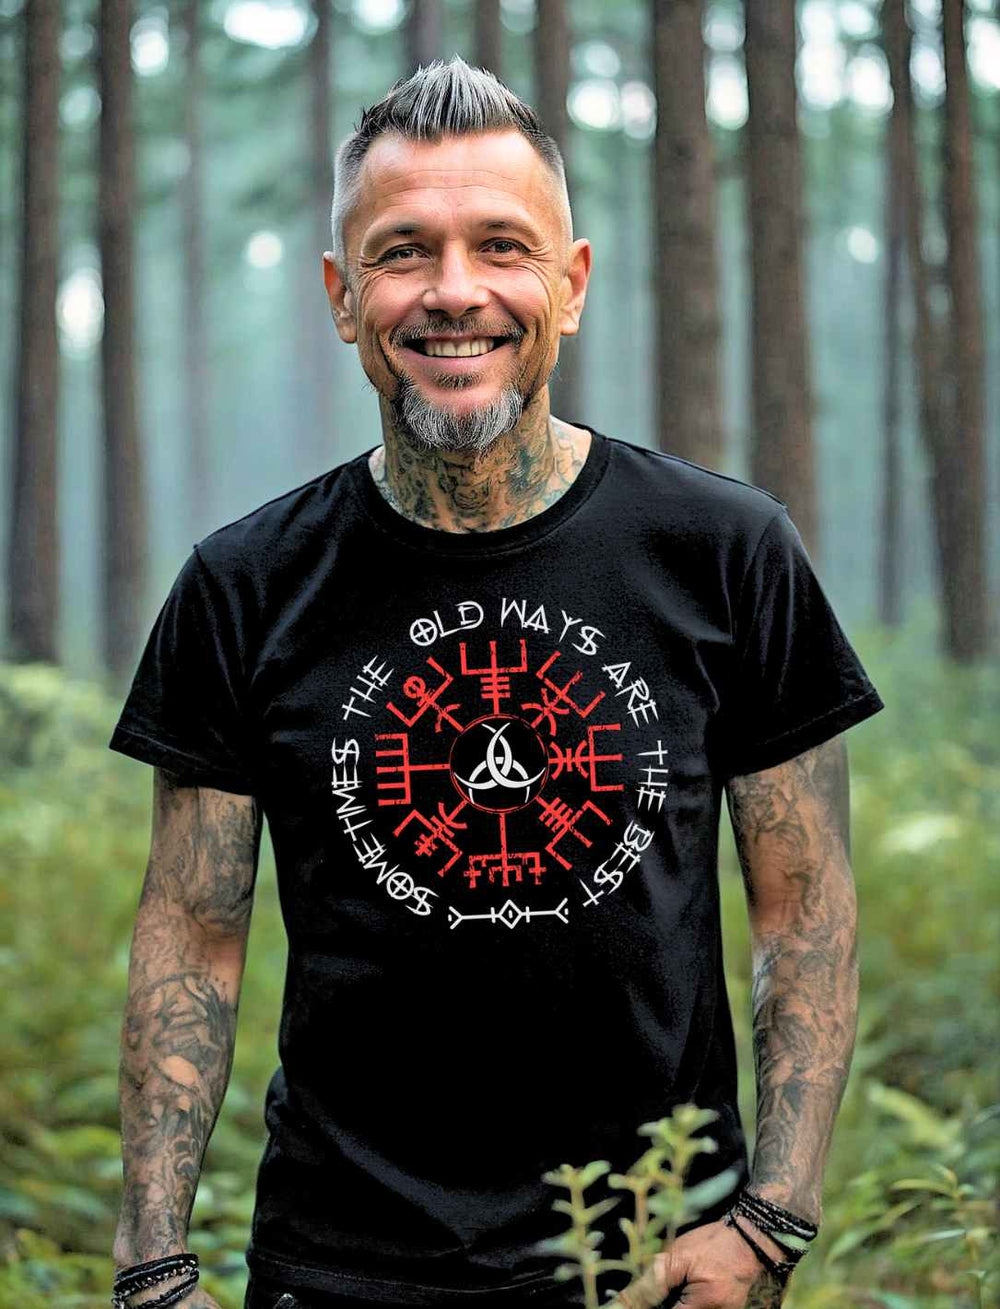 Mann trägt das schwarze T-Shirt "Sometimes the old ways" im Wald.